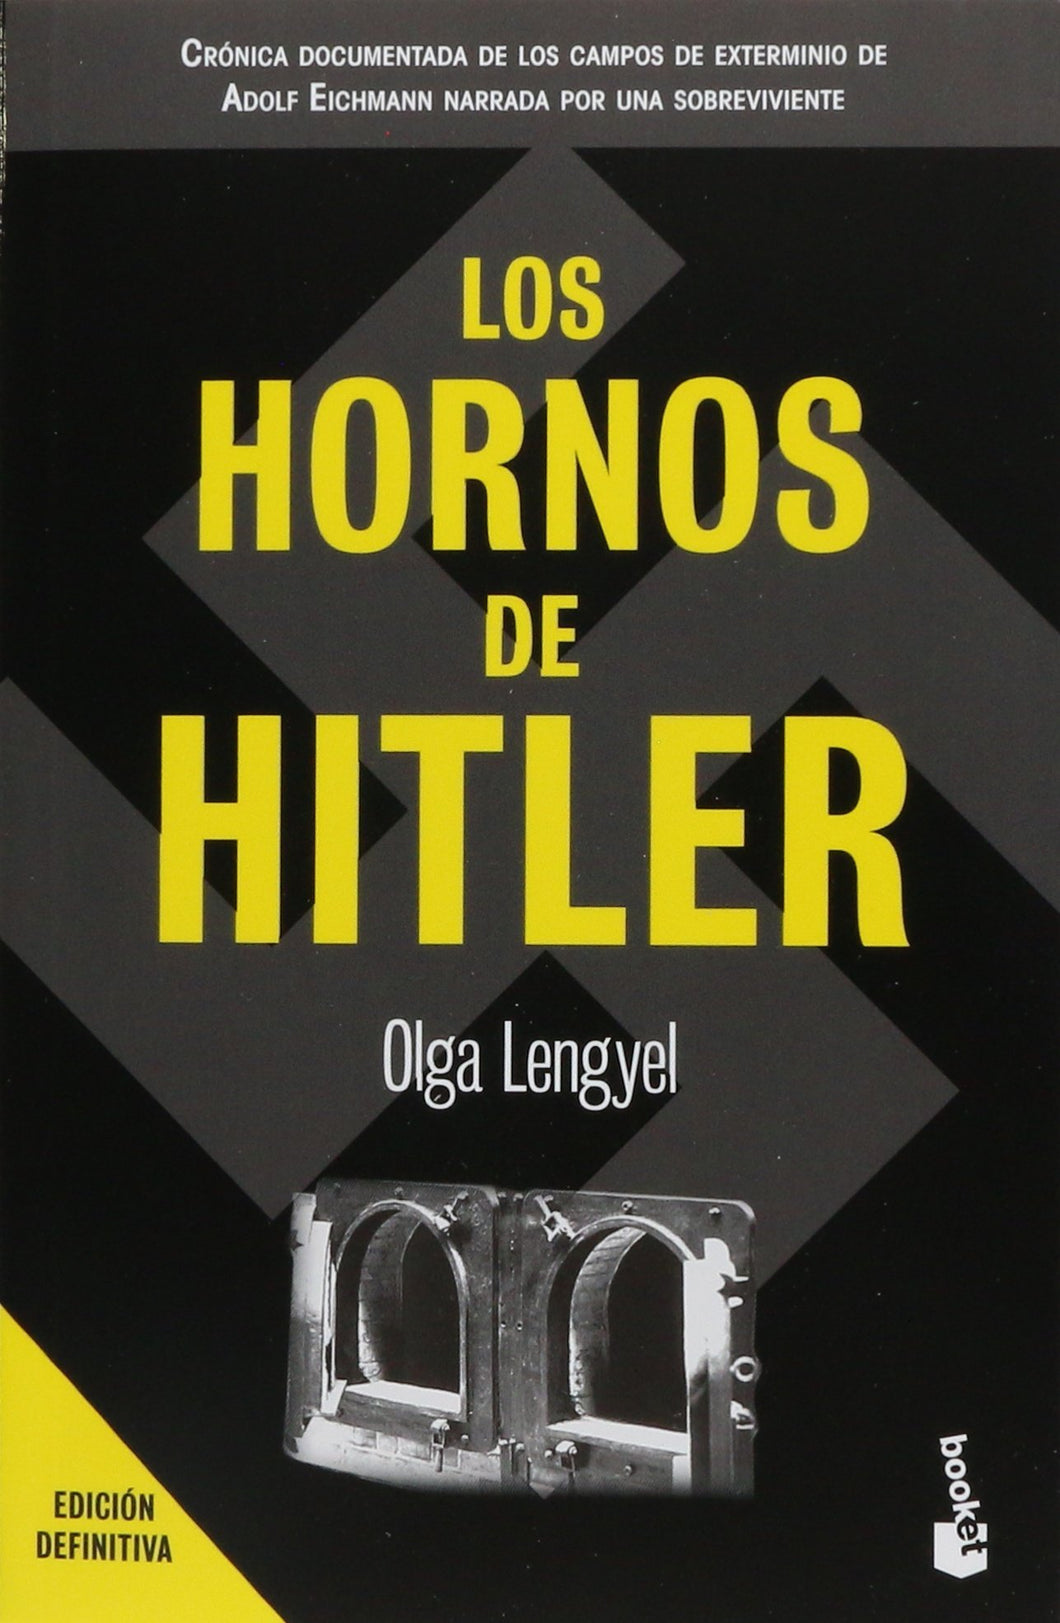 HORNOS DE HITLER